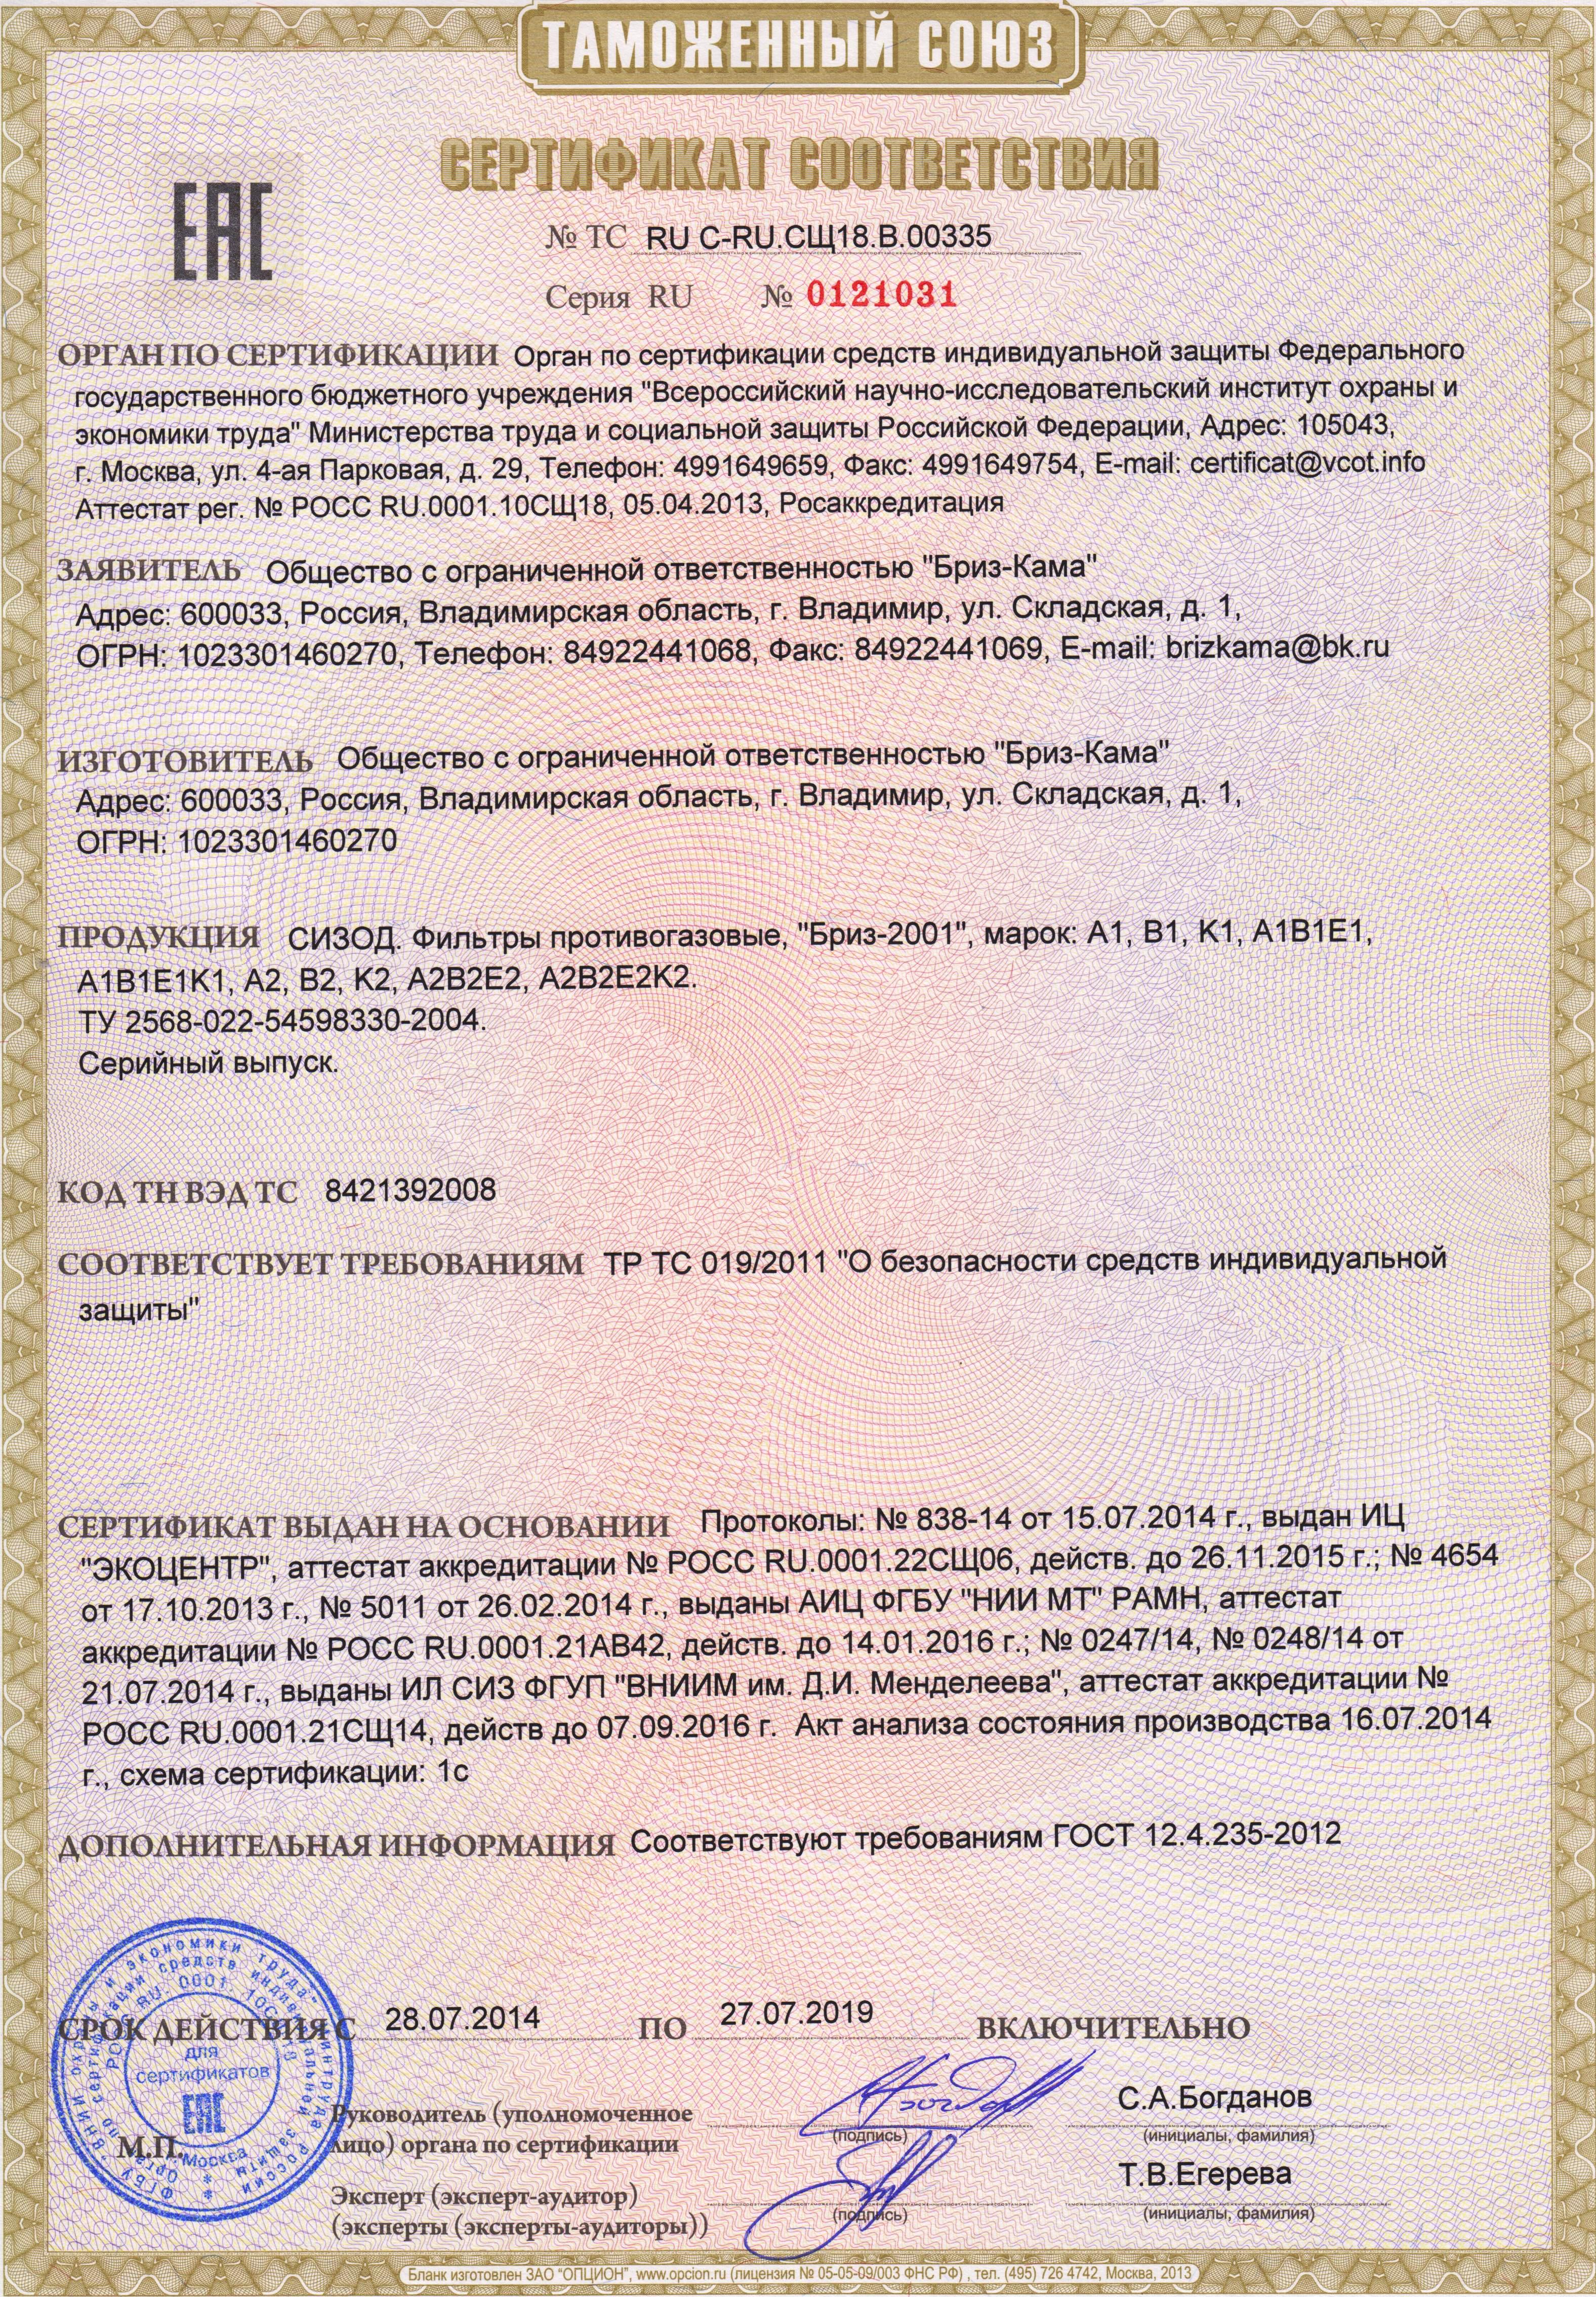 Тр тс 019 2011. Противогаз фильтрующий тр/ТС 019/2011. Сертификат соответствия на респиратор Бриз-3201. Сертификат паспорт на противогаз Бриз-4301 м (ППМ). Сертификат соответствия на противогаз ПШ 1.